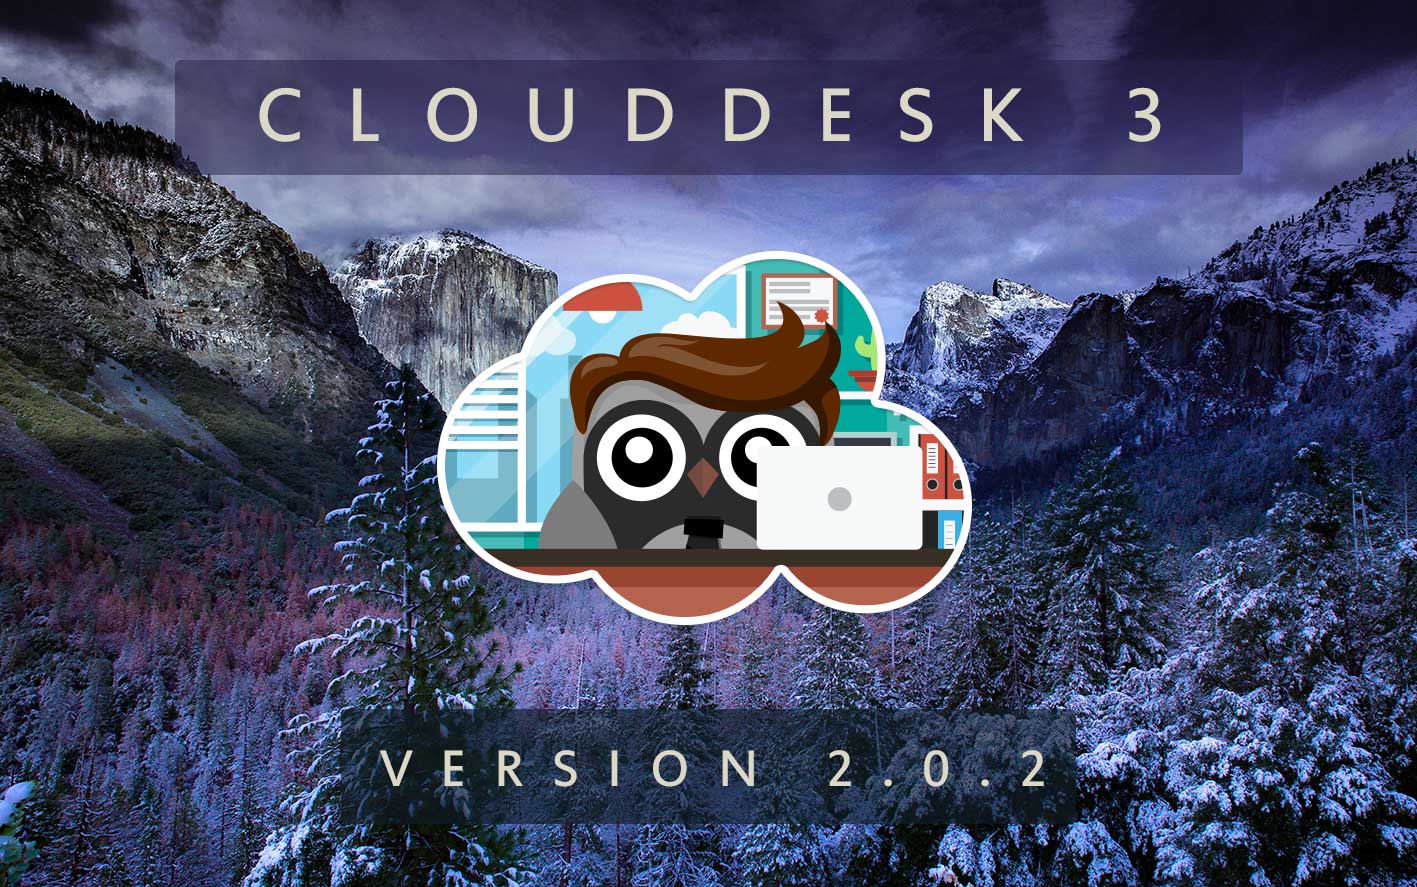 Cloud Desk 3 - Version 2.0.2